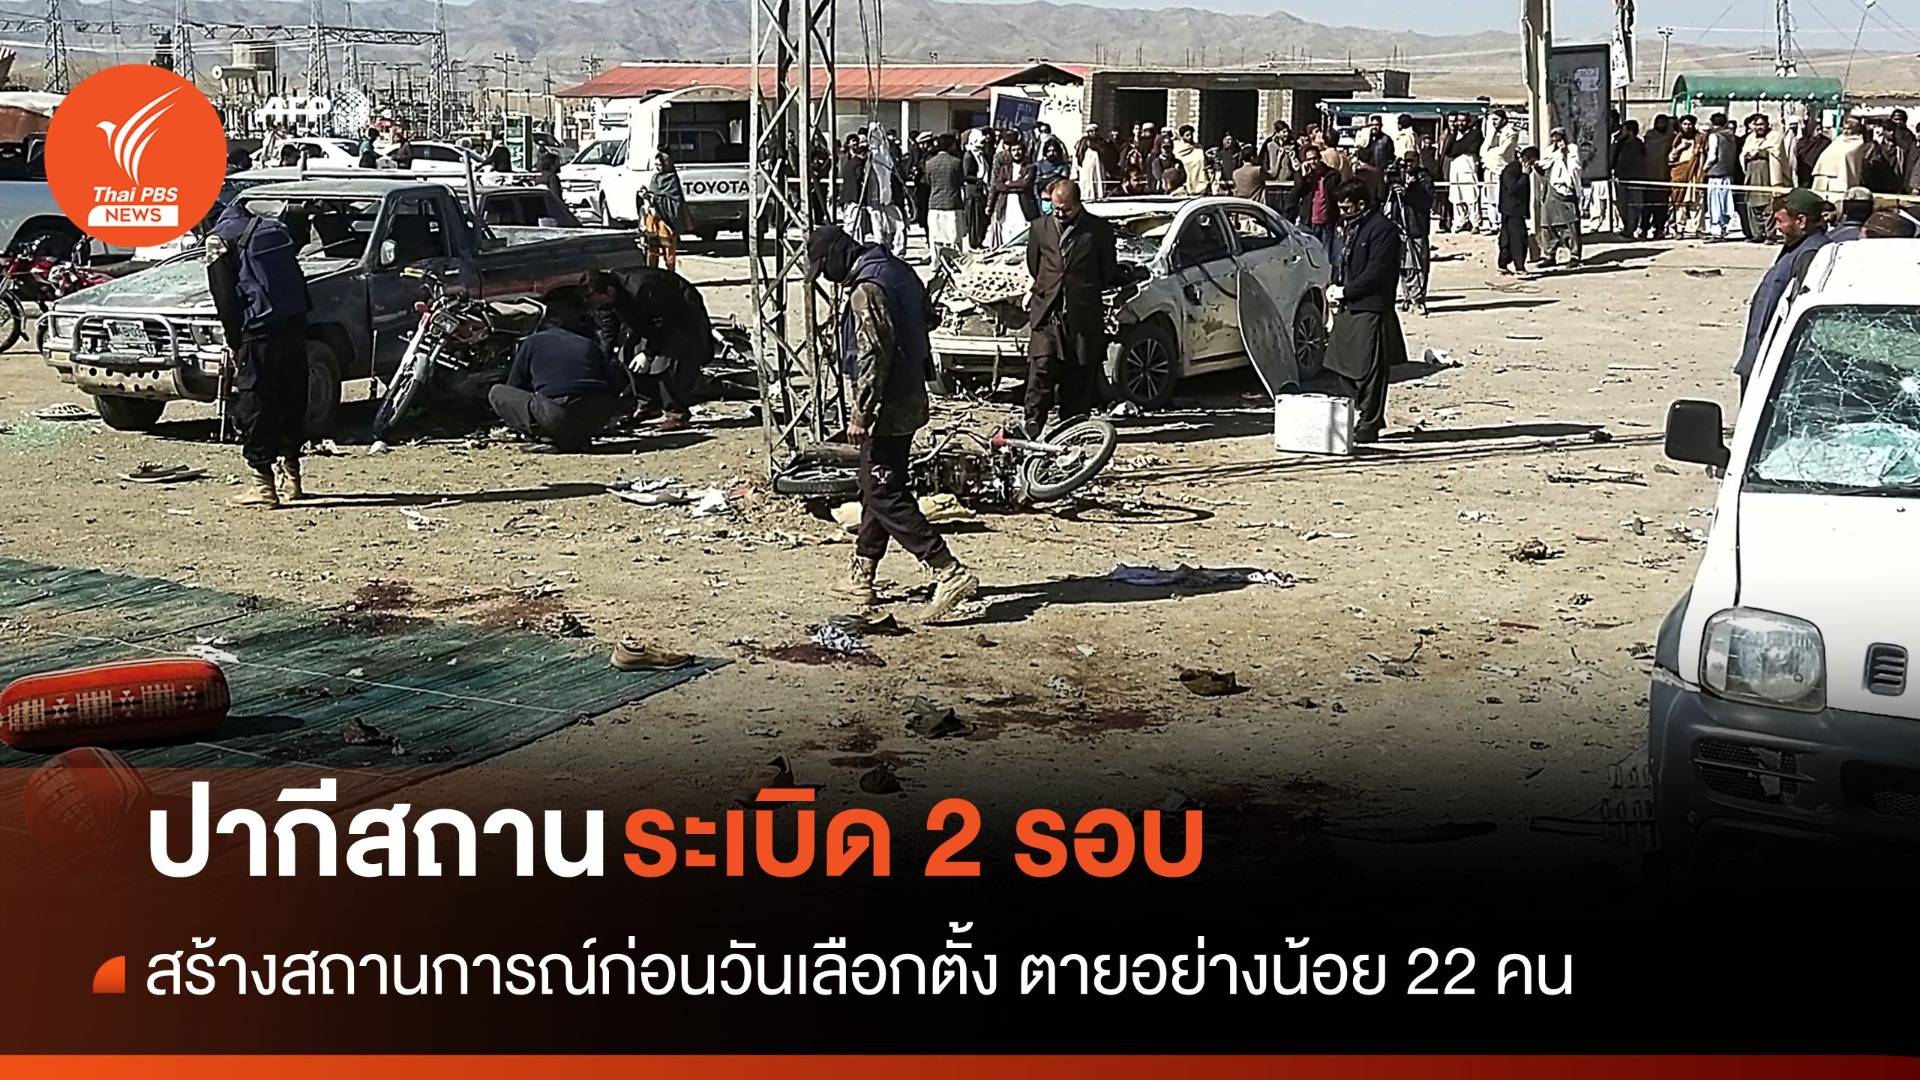 เกิดเหตุระเบิดก่อนวันเลือกตั้งปากีสถาน ตายอย่างน้อย 22 คน